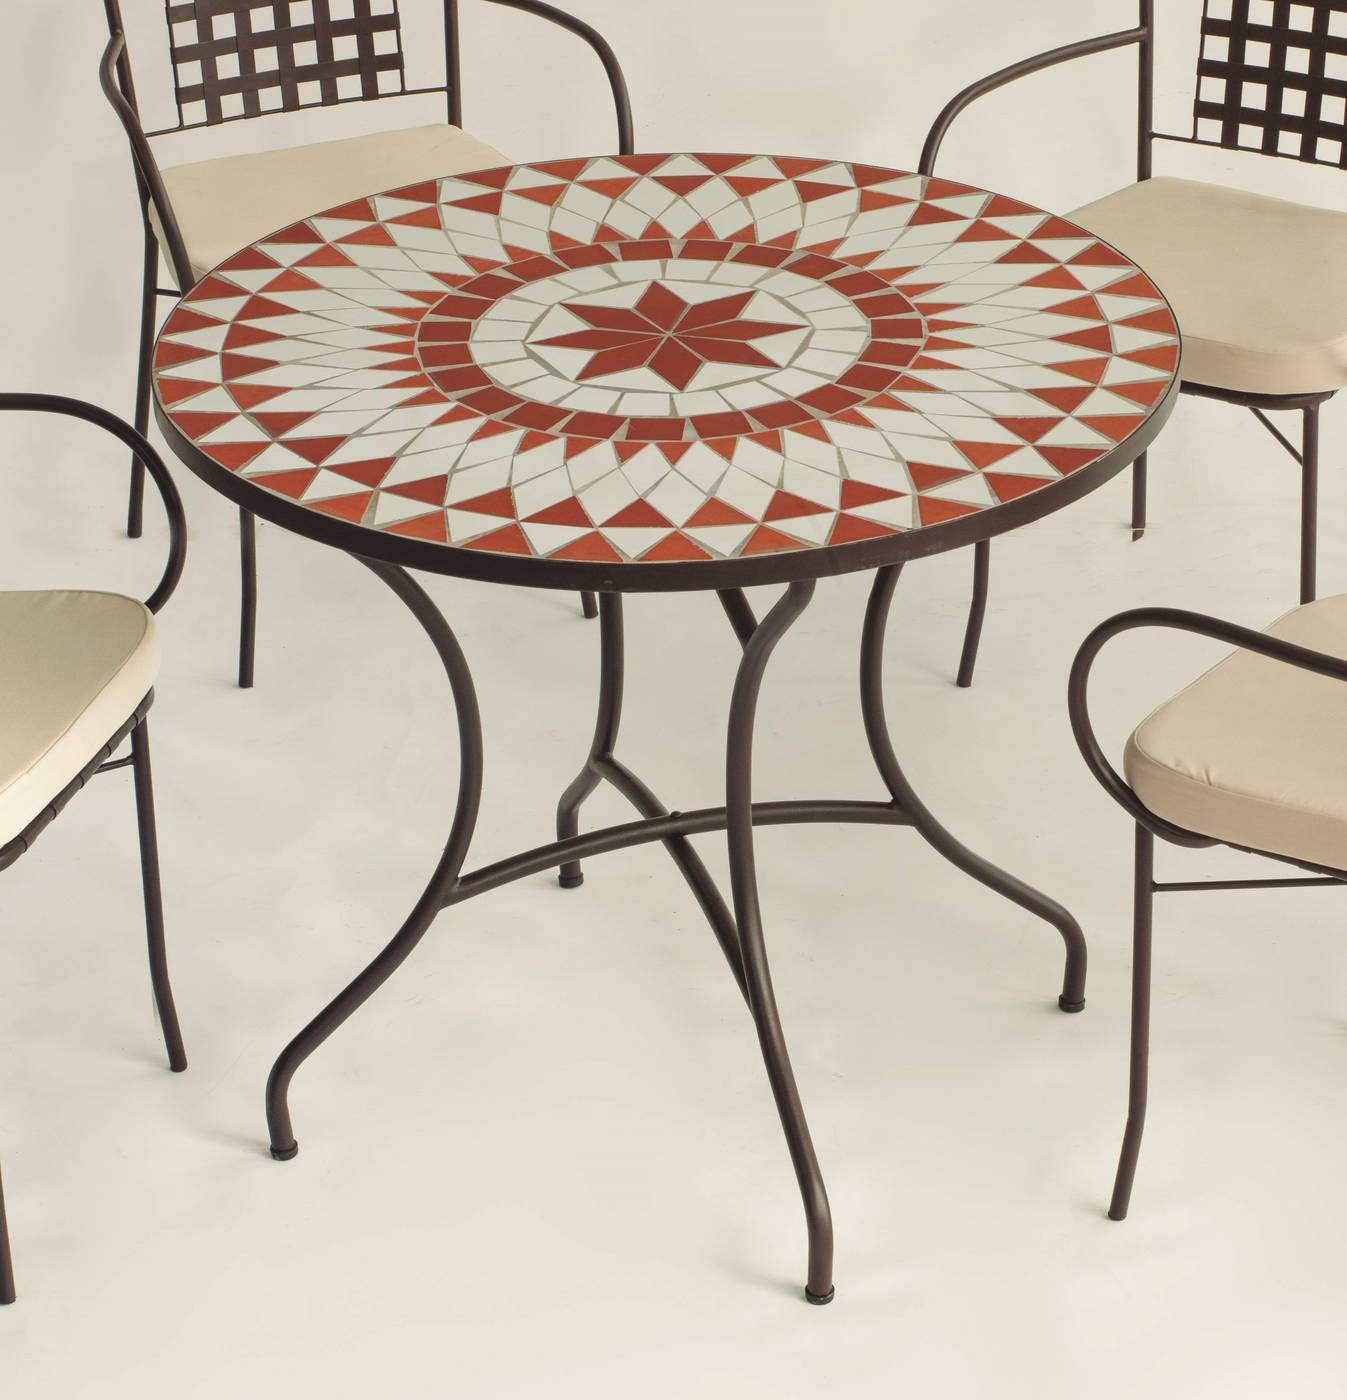 Conjunto Mosaico Neypal-Shifa - Conjunto de forja color bronce: mesa con tablero mosaico de 90 cm + 4 sillones con cojines asiento.